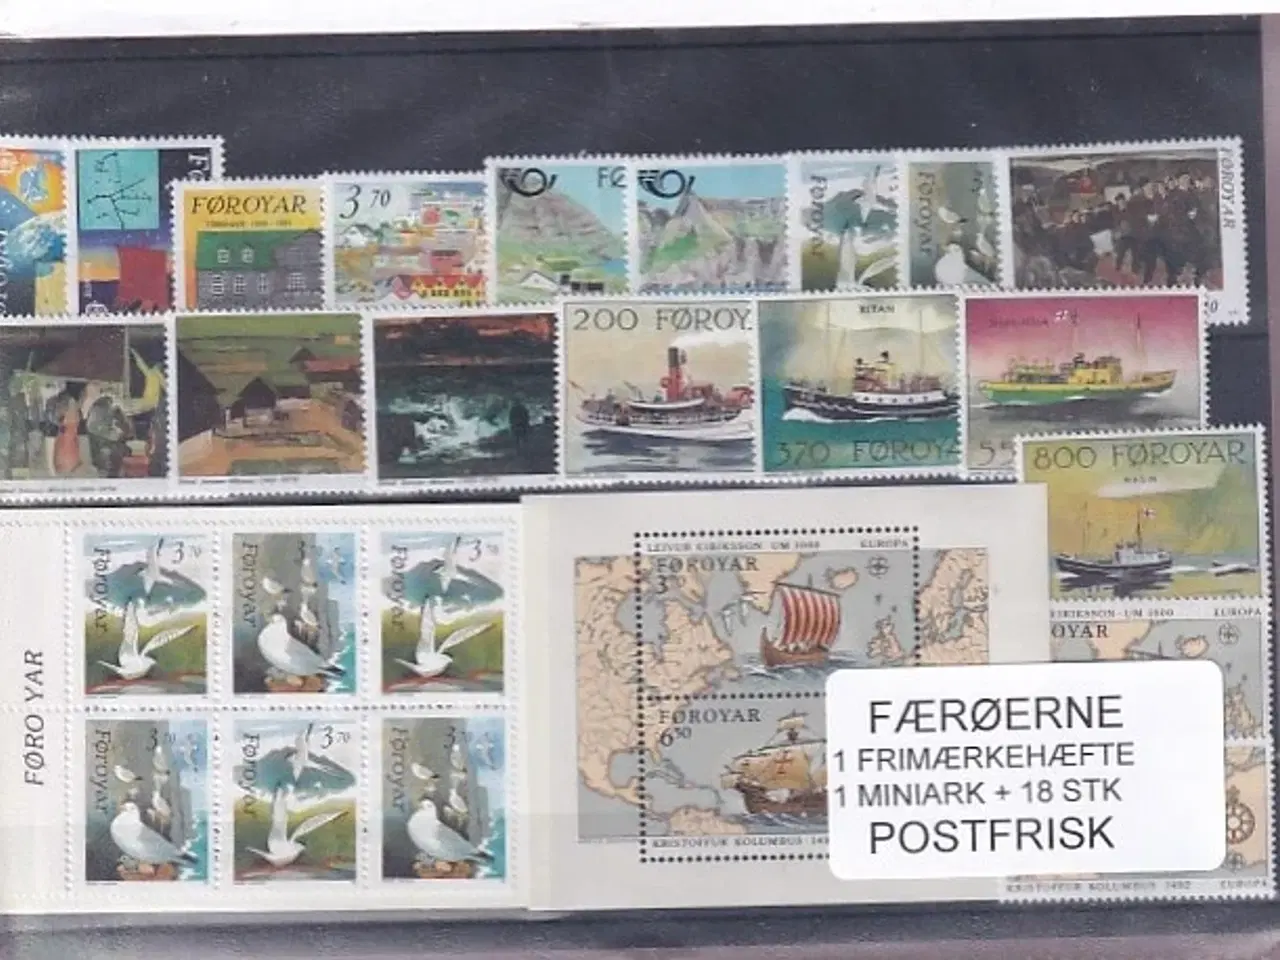 Billede 1 - Færøerne - 1 Frimærkehæfte + 1 Miniark + 18 Stk. - Postfrisk